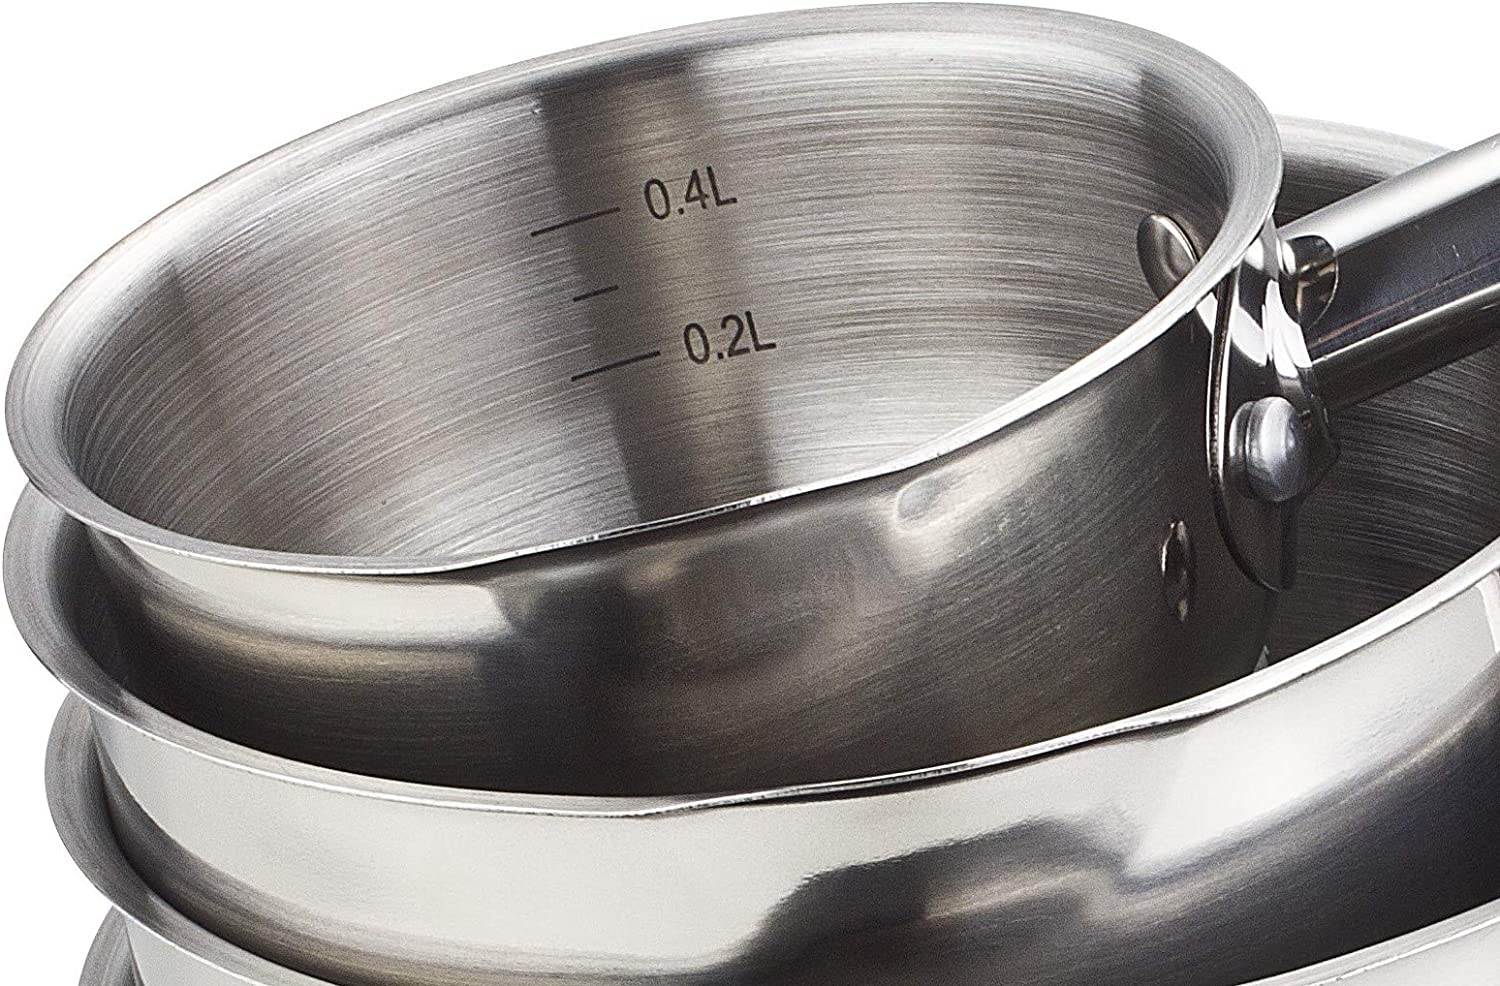 KAMBERG Frying Pan, Cast Aluminium, Gray, 20 cm